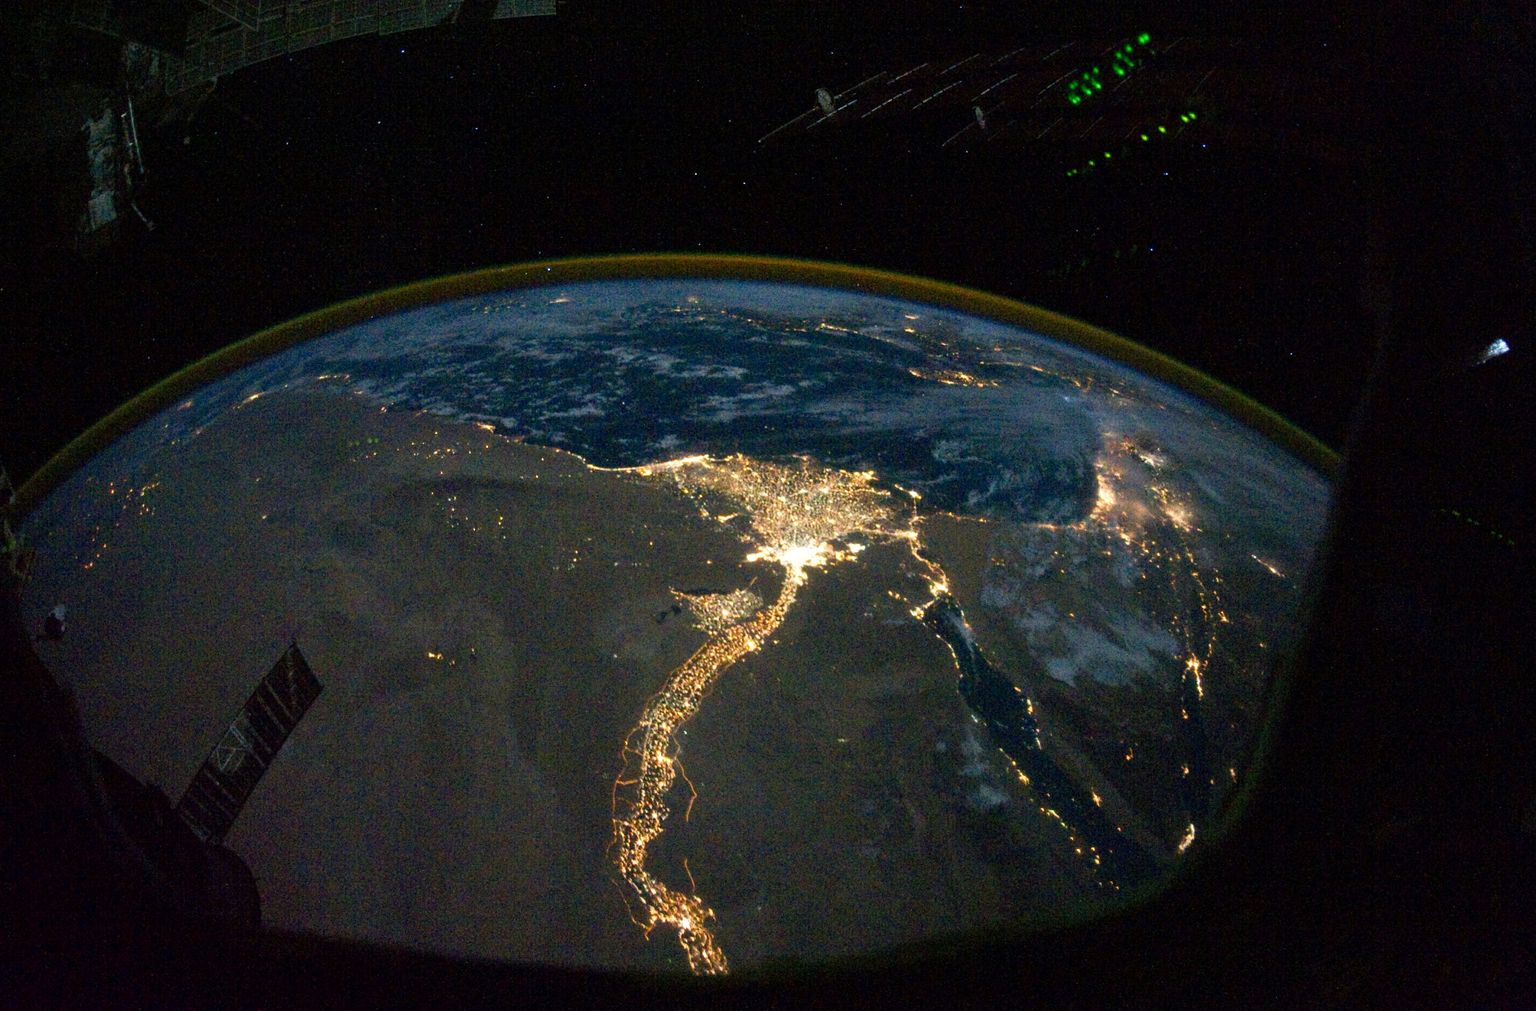 Rahvusvahelisest kosmosejaamast 28. oktoobril 2010 astronautide tehtud foto Egiptuse asustustest ja Niiluse jõest